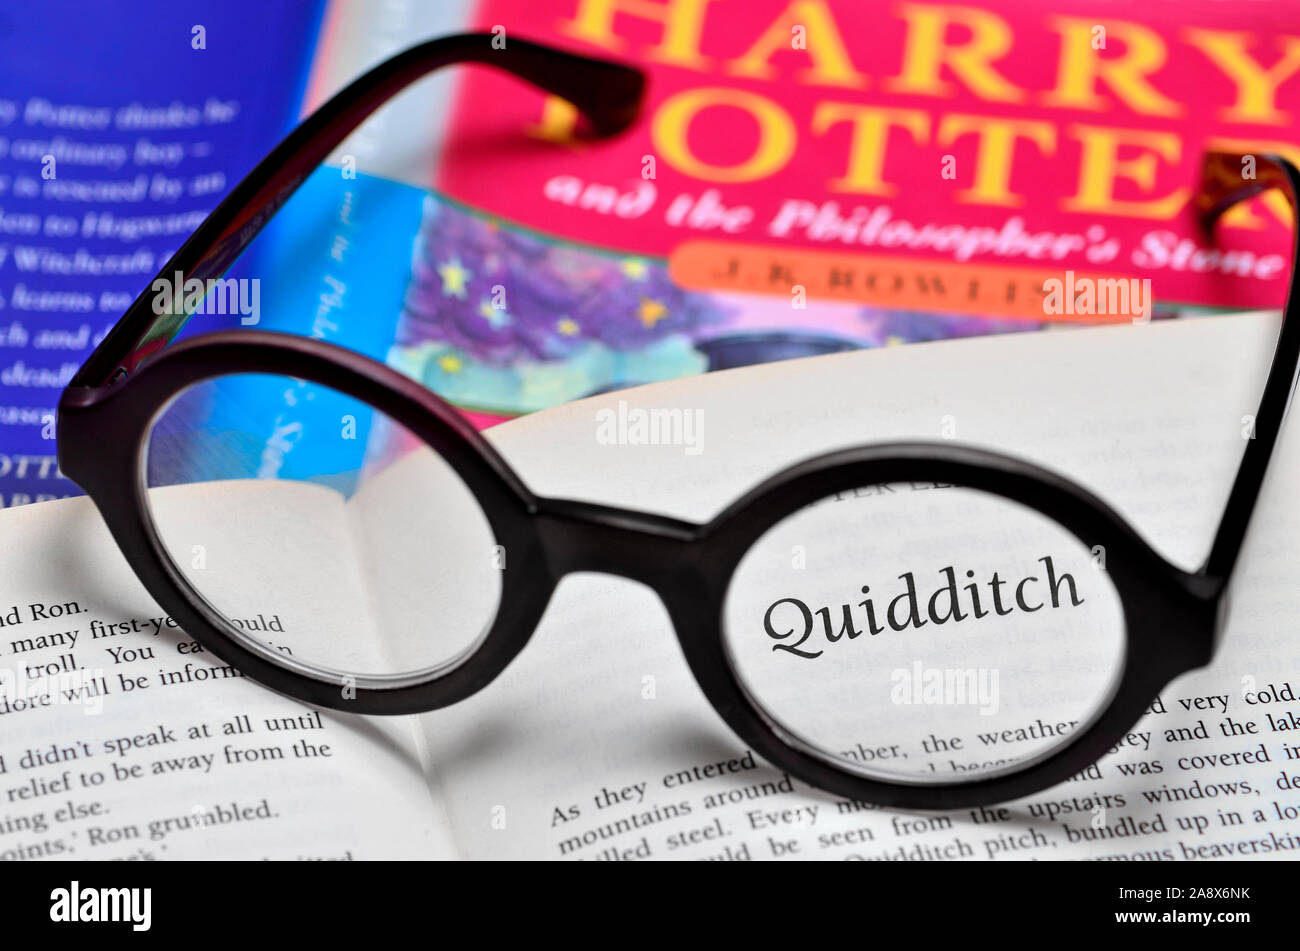 Harry Potter Buch mit Harry Potter Brille Stockfotografie - Alamy